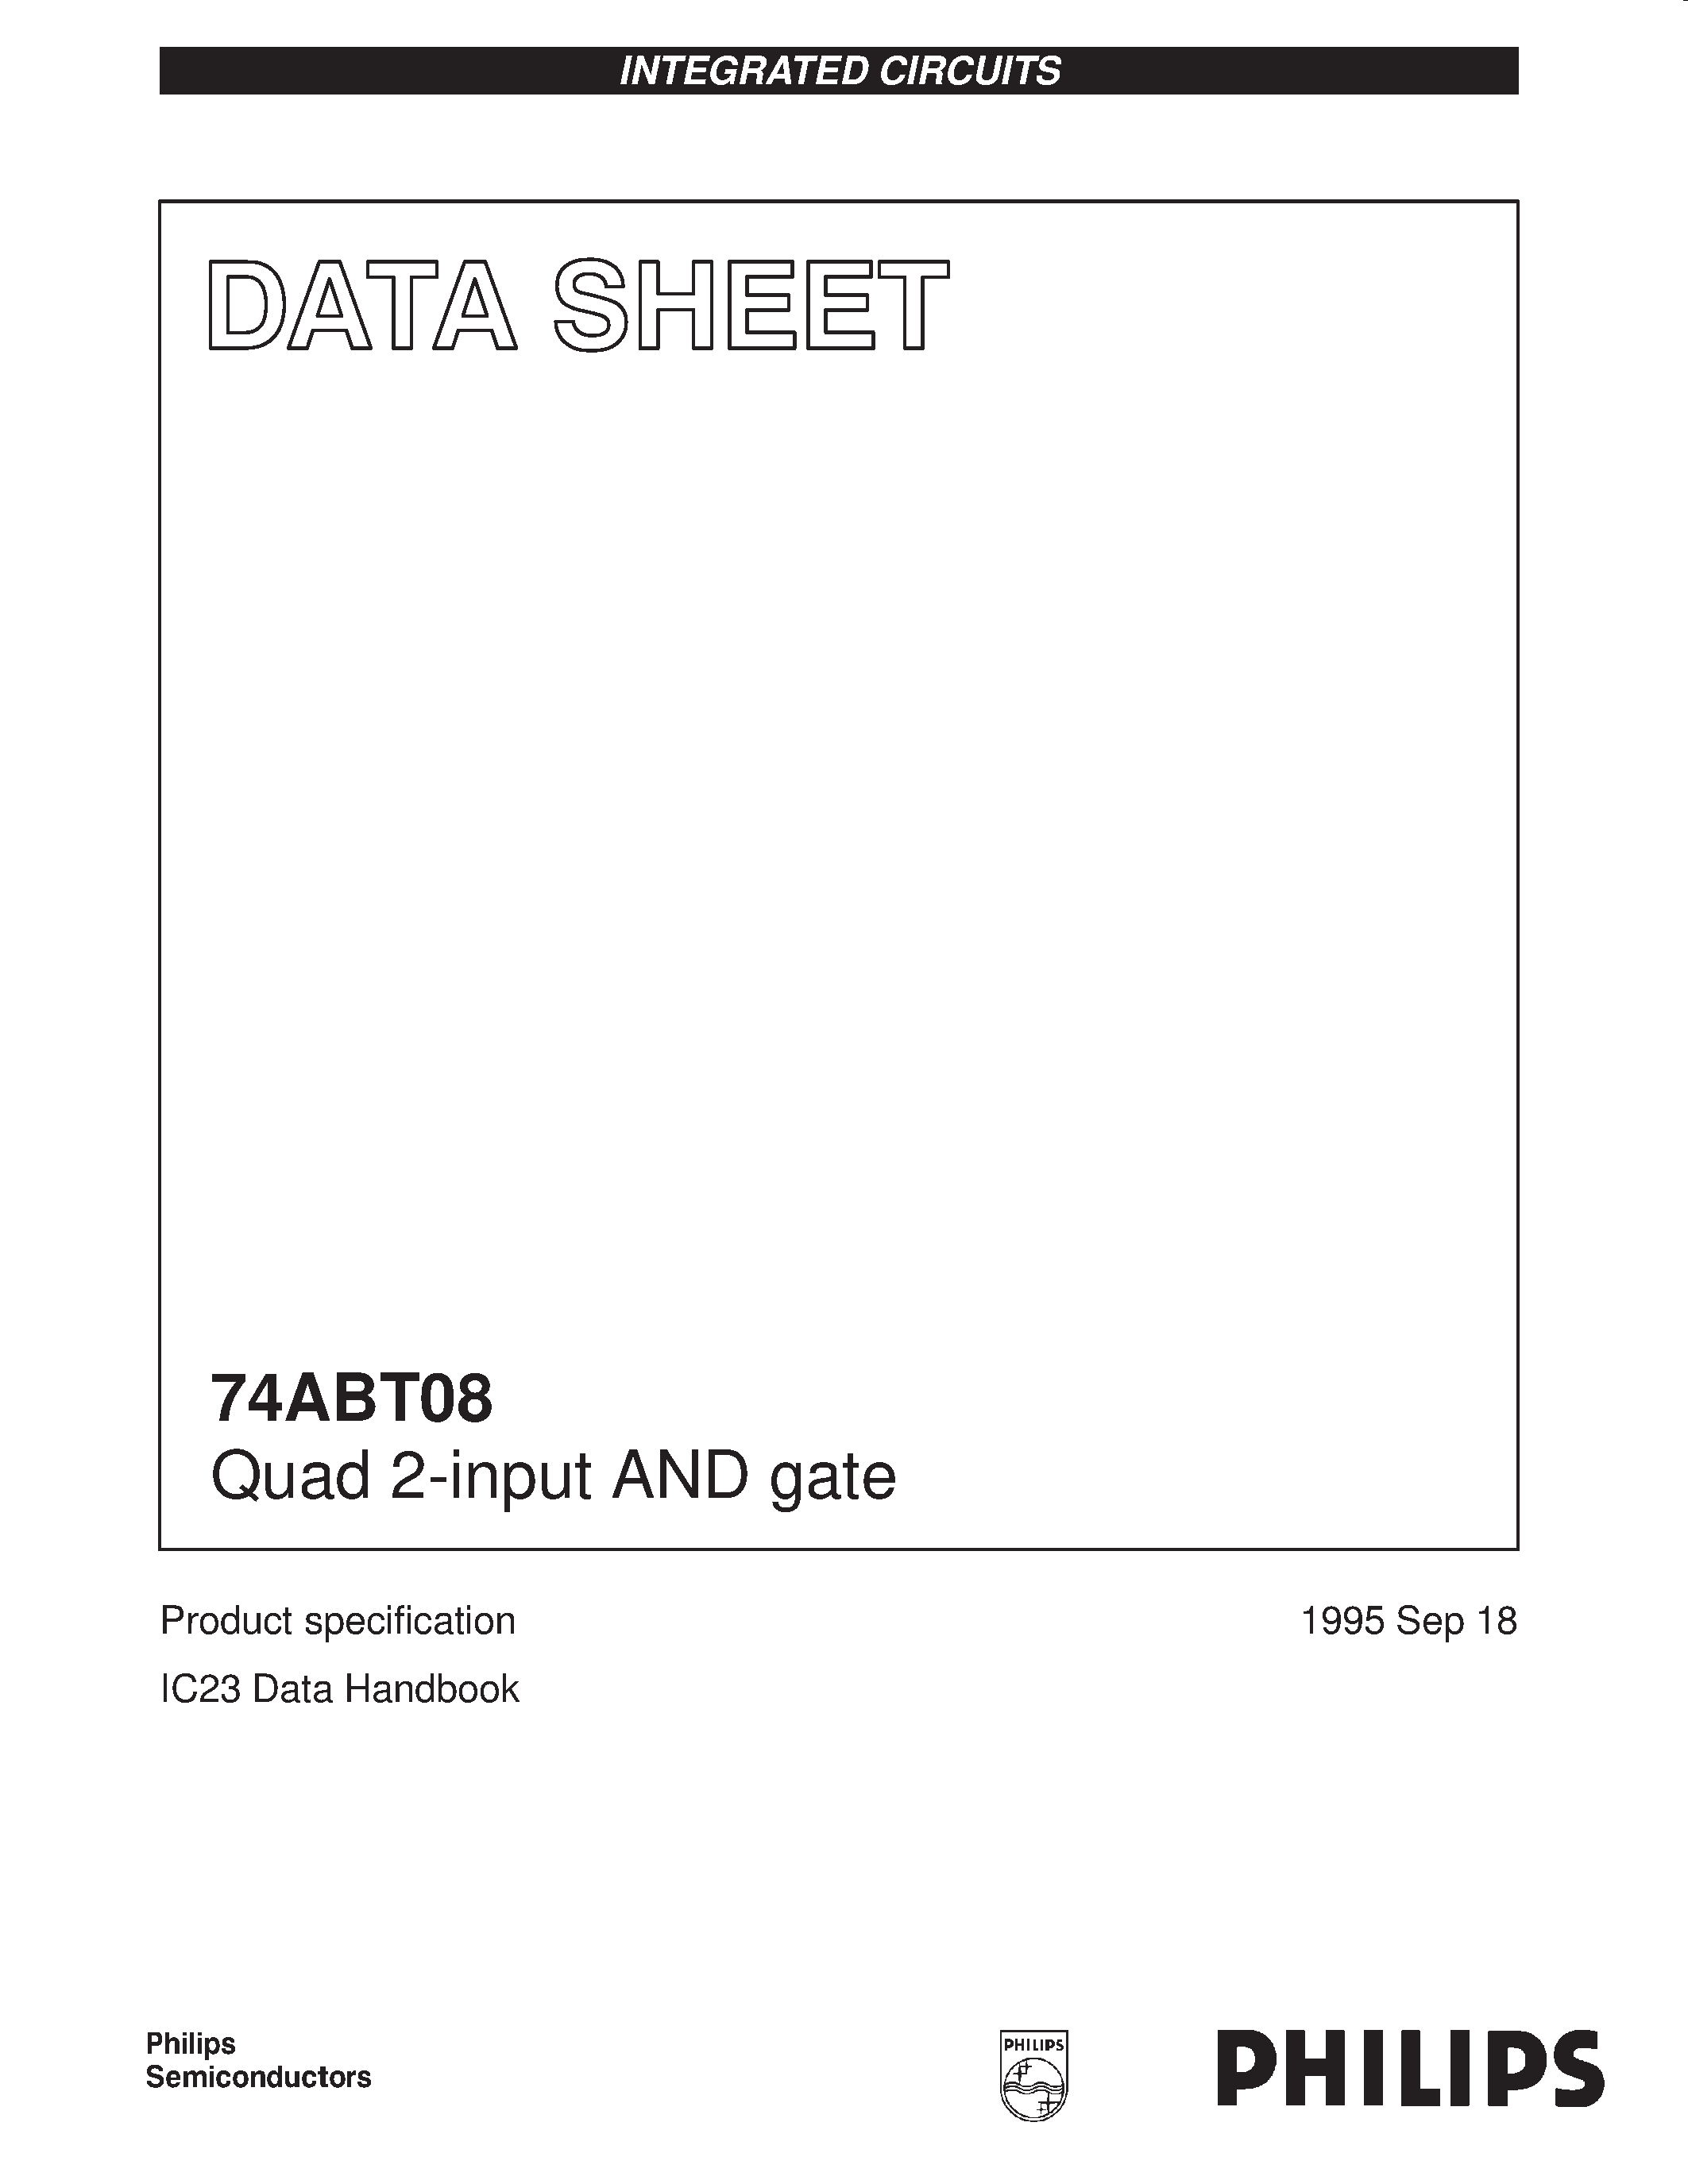 Даташит 74ABT08N - Quad 2-input AND gate страница 1